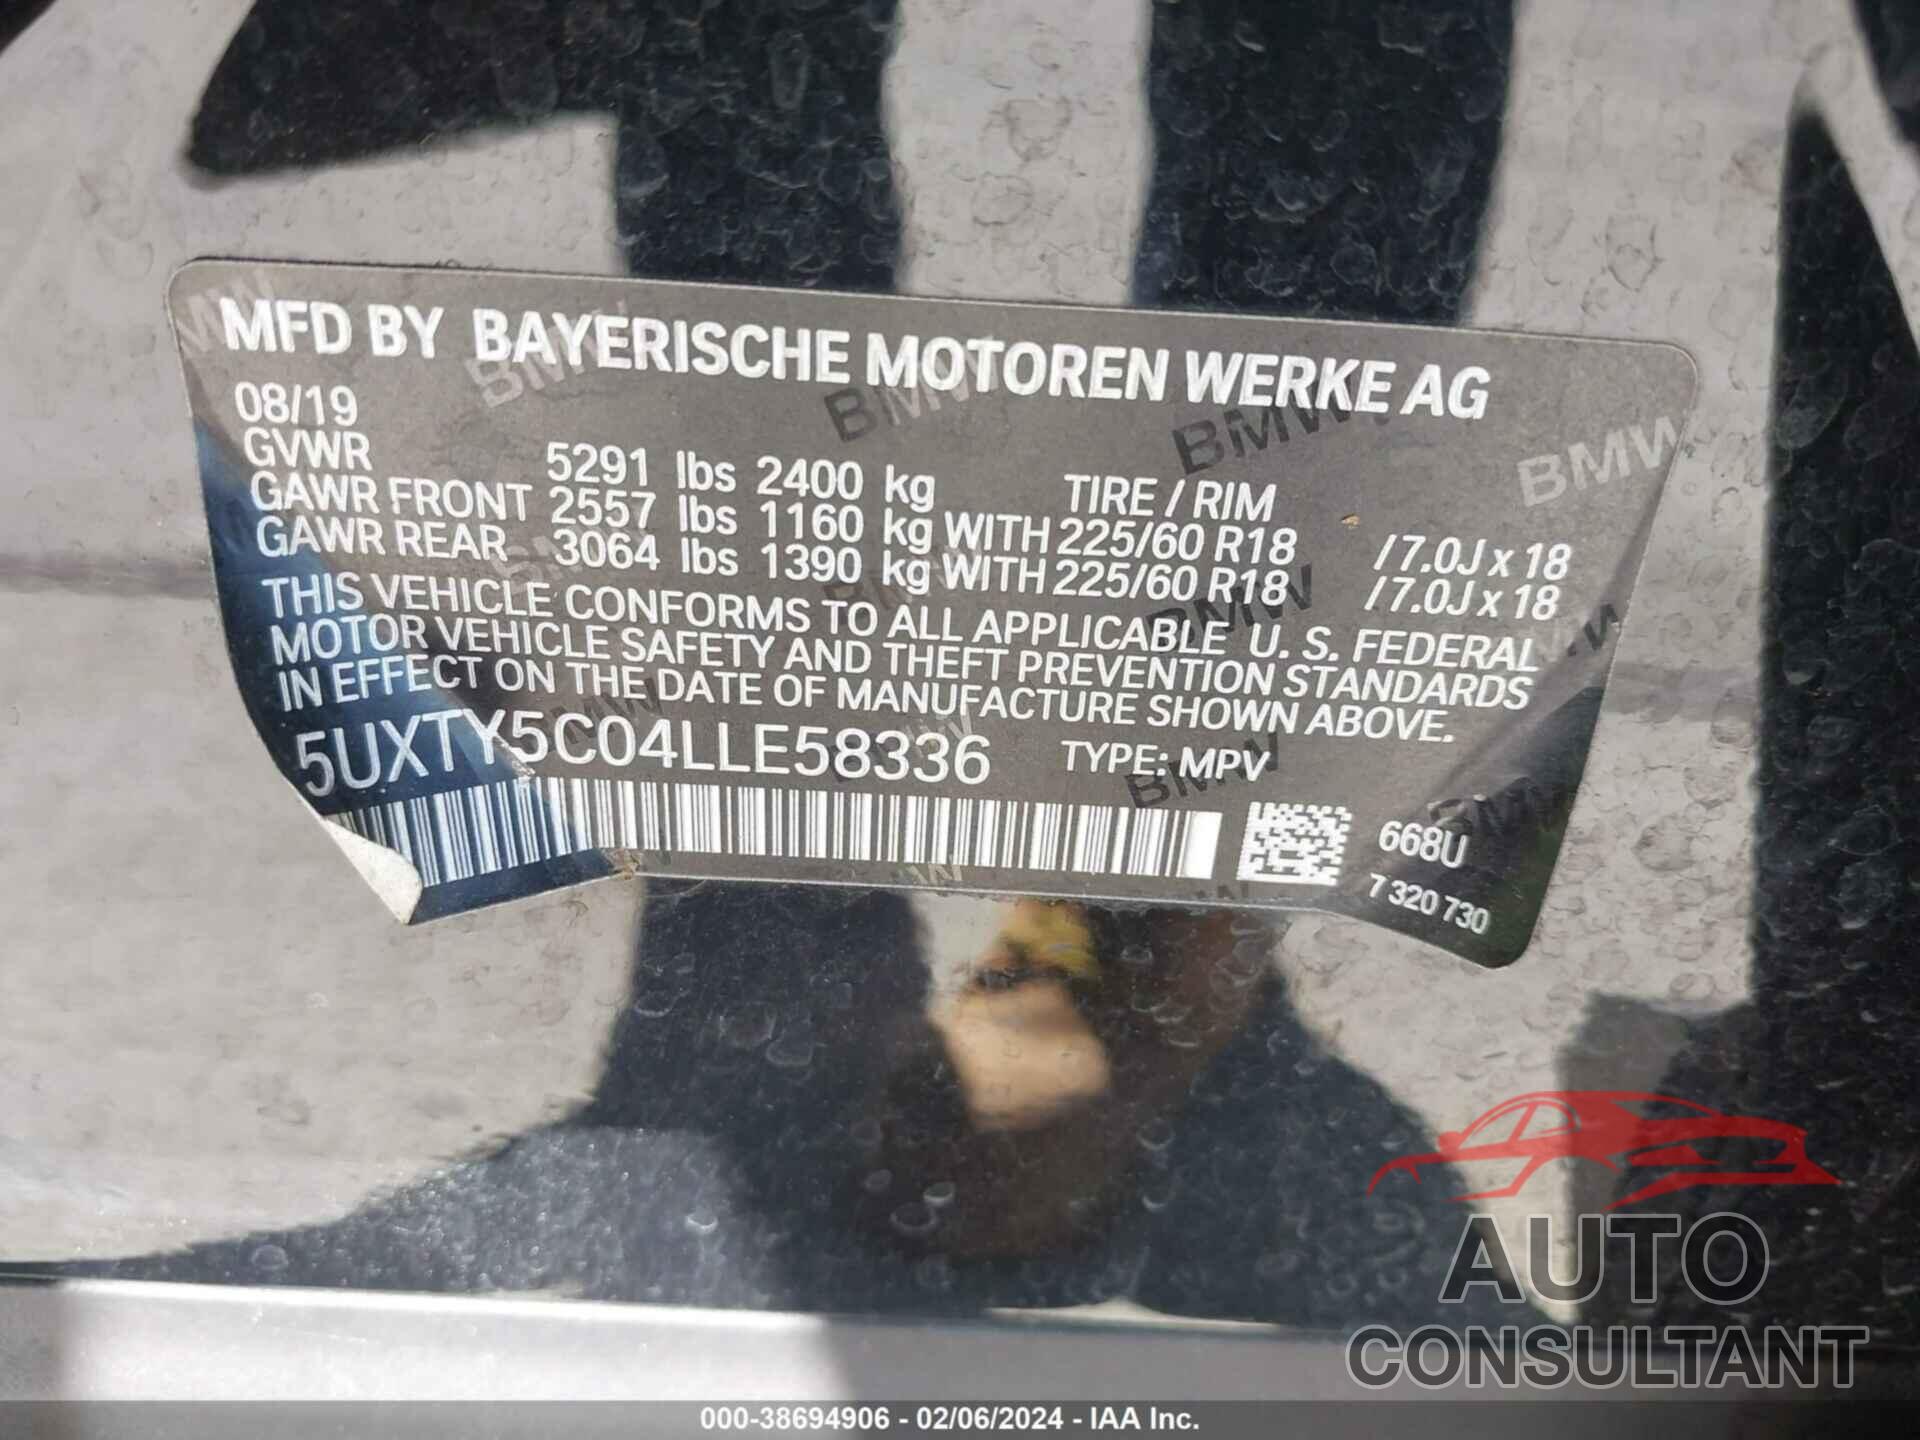 BMW X3 2020 - 5UXTY5C04LLE58336